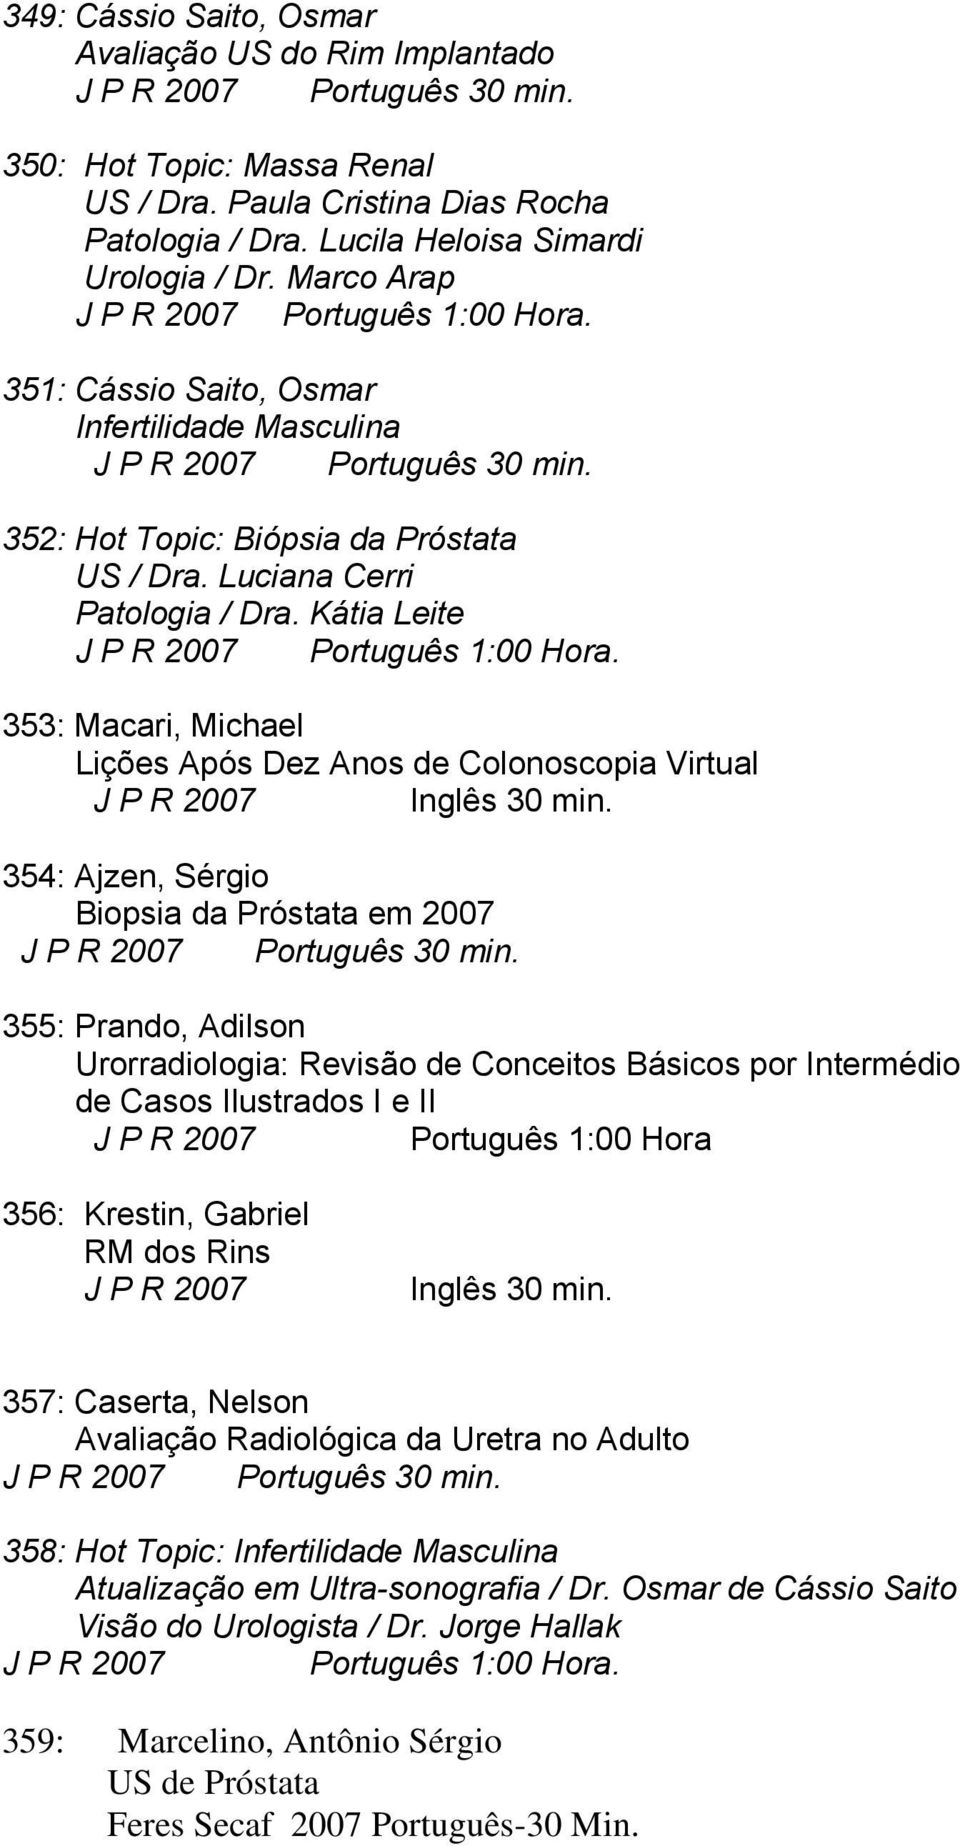 352: Hot Topic: Biópsia da Próstata US / Dra. Luciana Cerri Patologia / Dra. Kátia Leite J P R 2007 Português 1:00 Hora.